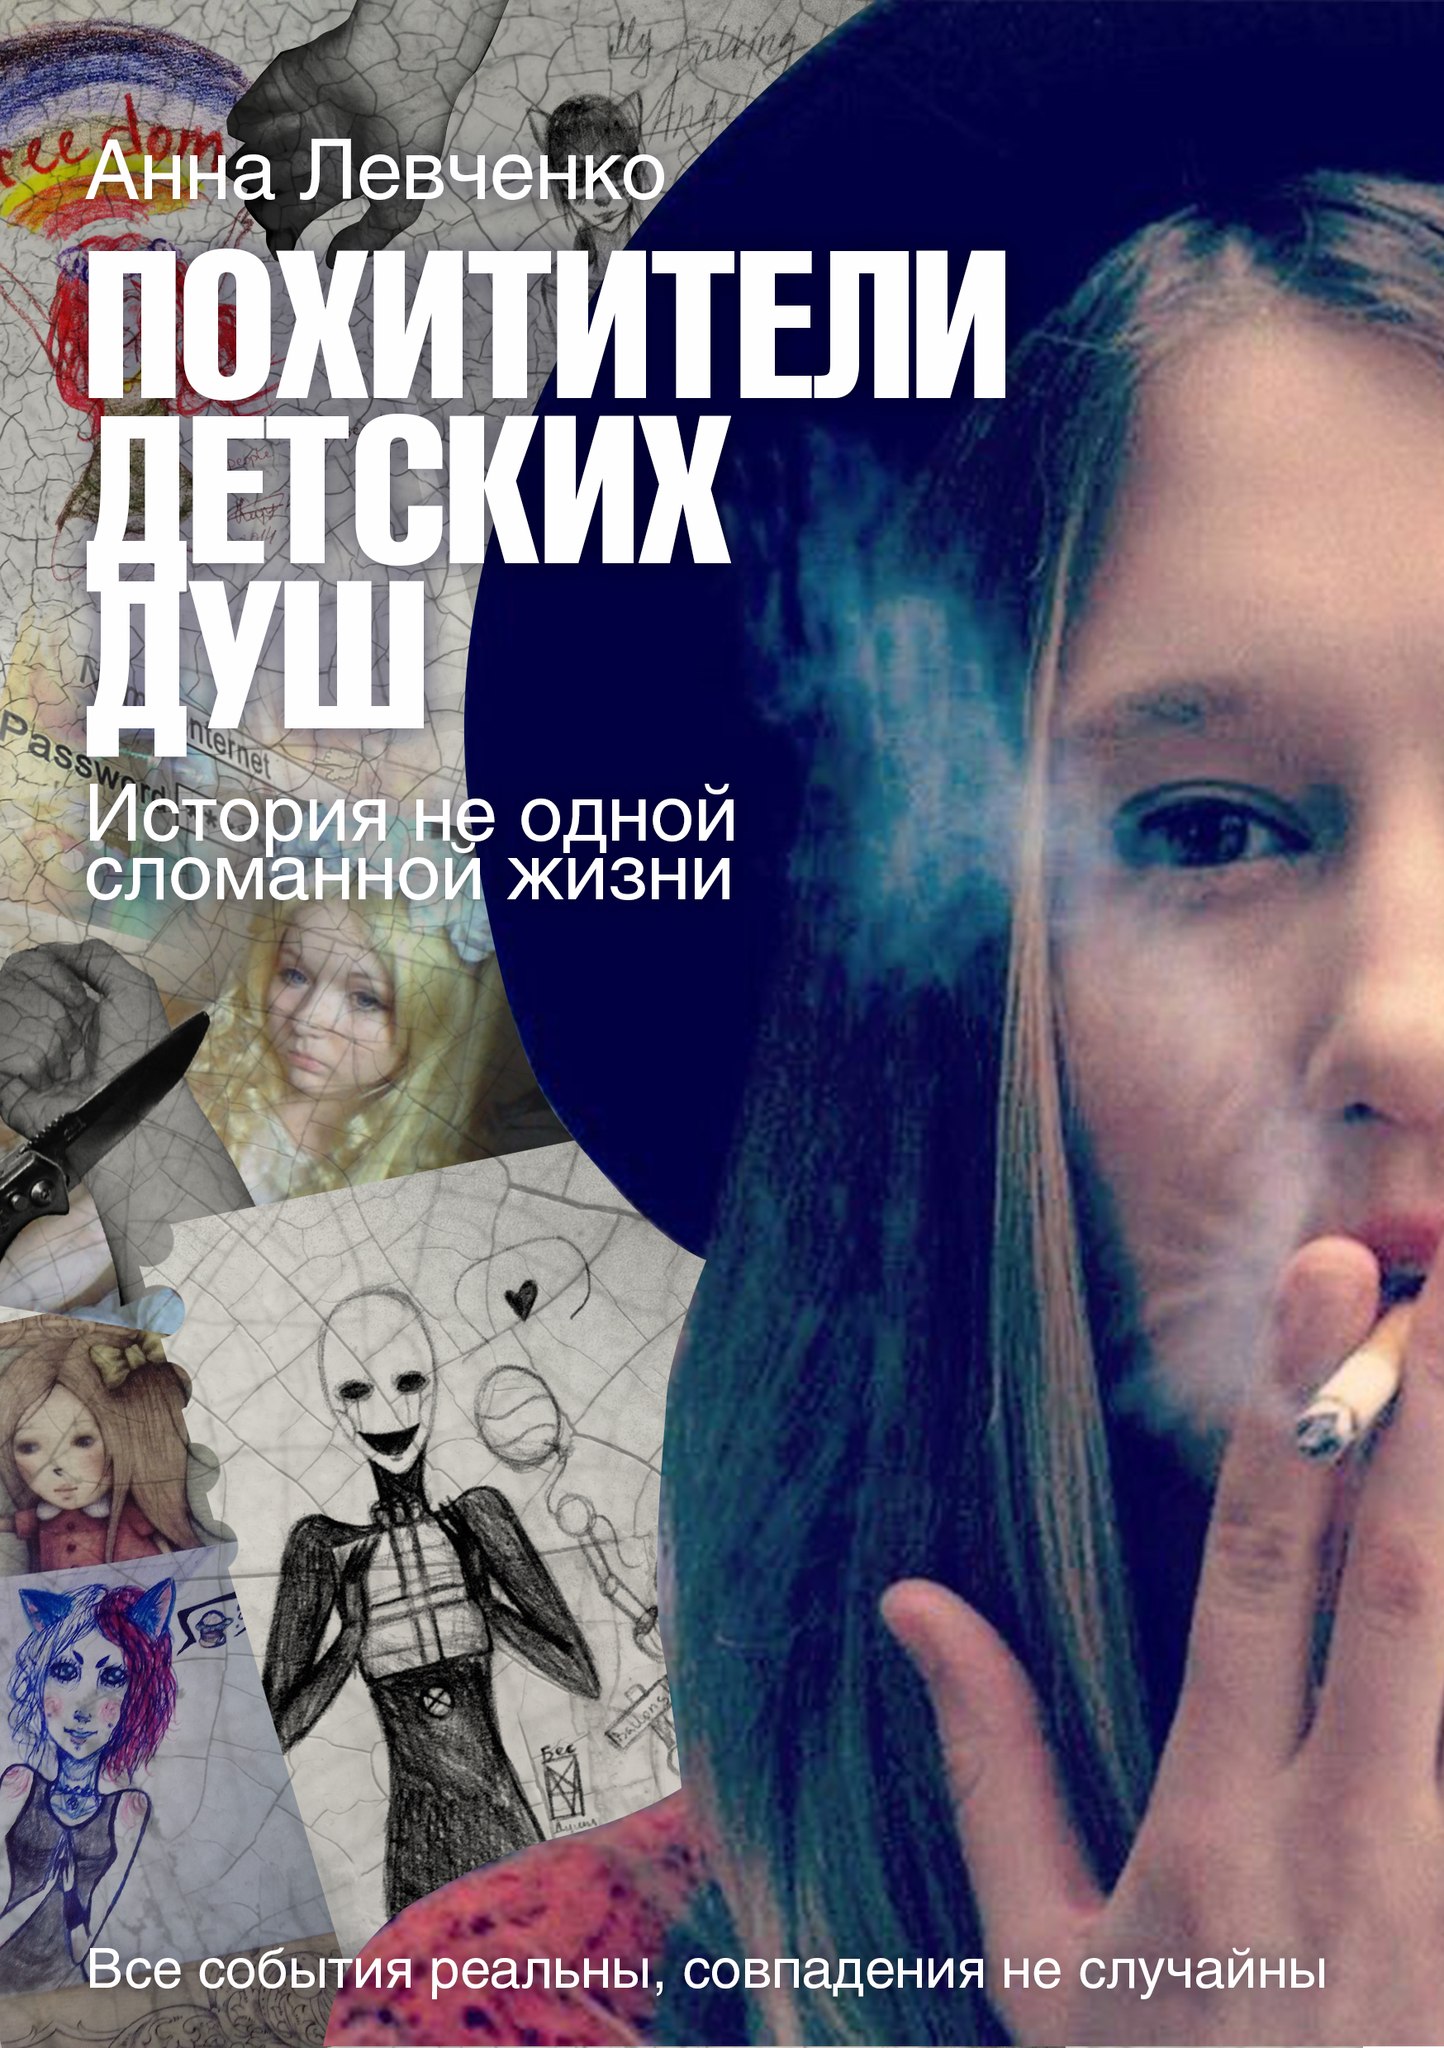 Похитители детских душ. ("Дети Онлайн. Опасности в Сети") Книга Анны Левченко.